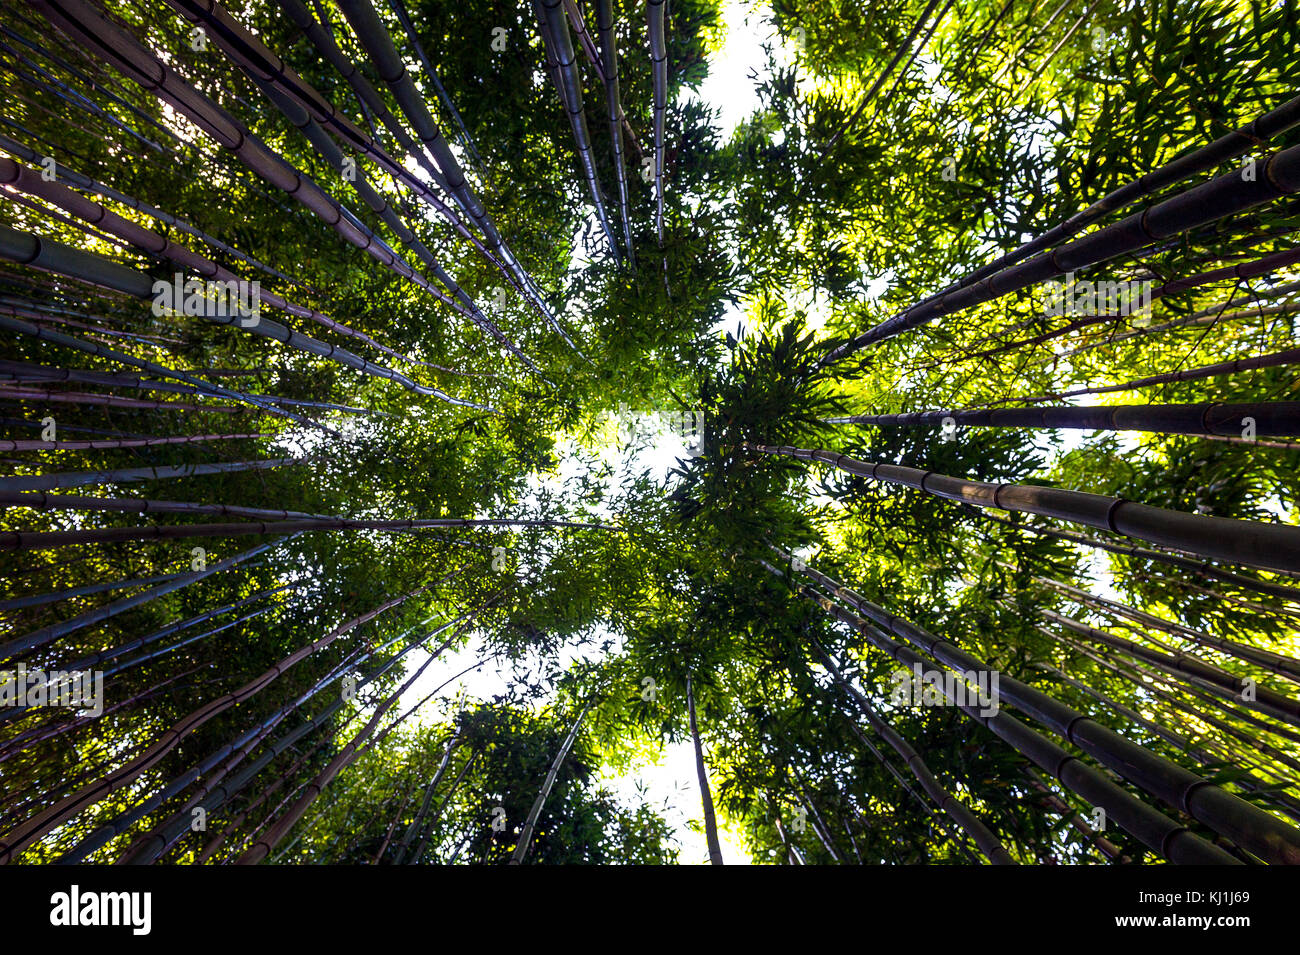 Europe, France, Var, Montauroux. bamboo plantation. Stock Photo